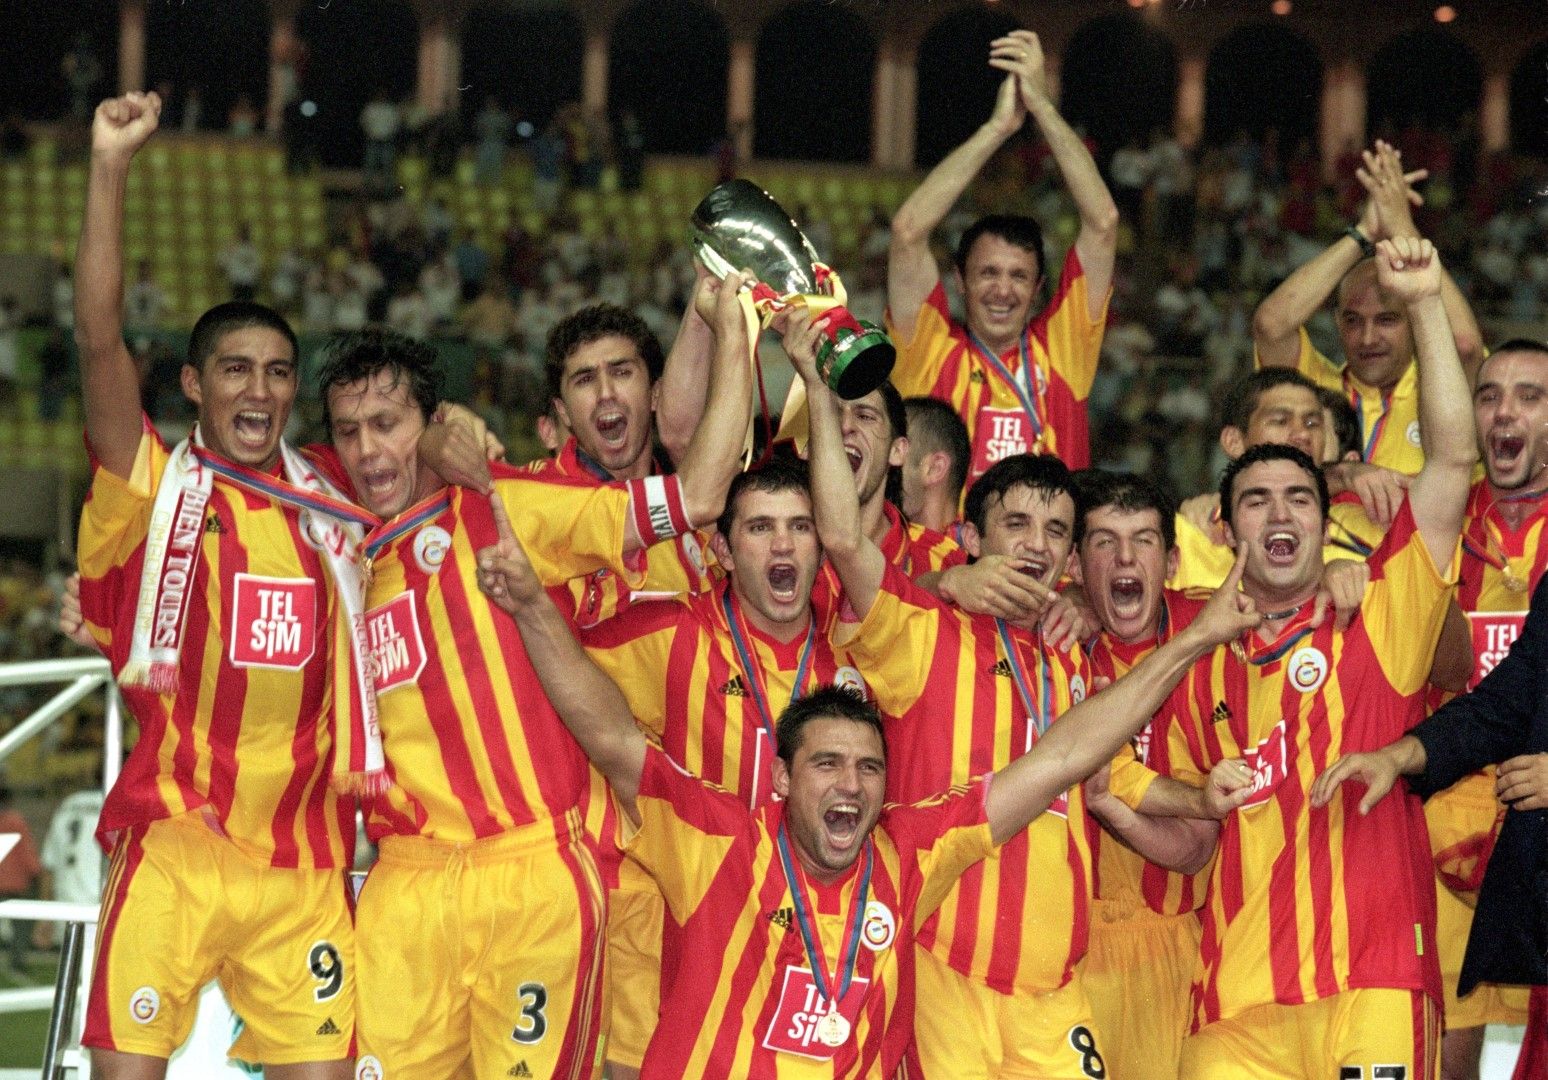 2000 г. "Галатасарай" триумфира с трофея, след като победи "Реал" в Монте Карло, а над всички в мача бе Марио Жардел (крайният вляво). Години по-късно бразилецът игра у нас, в "Черно море".